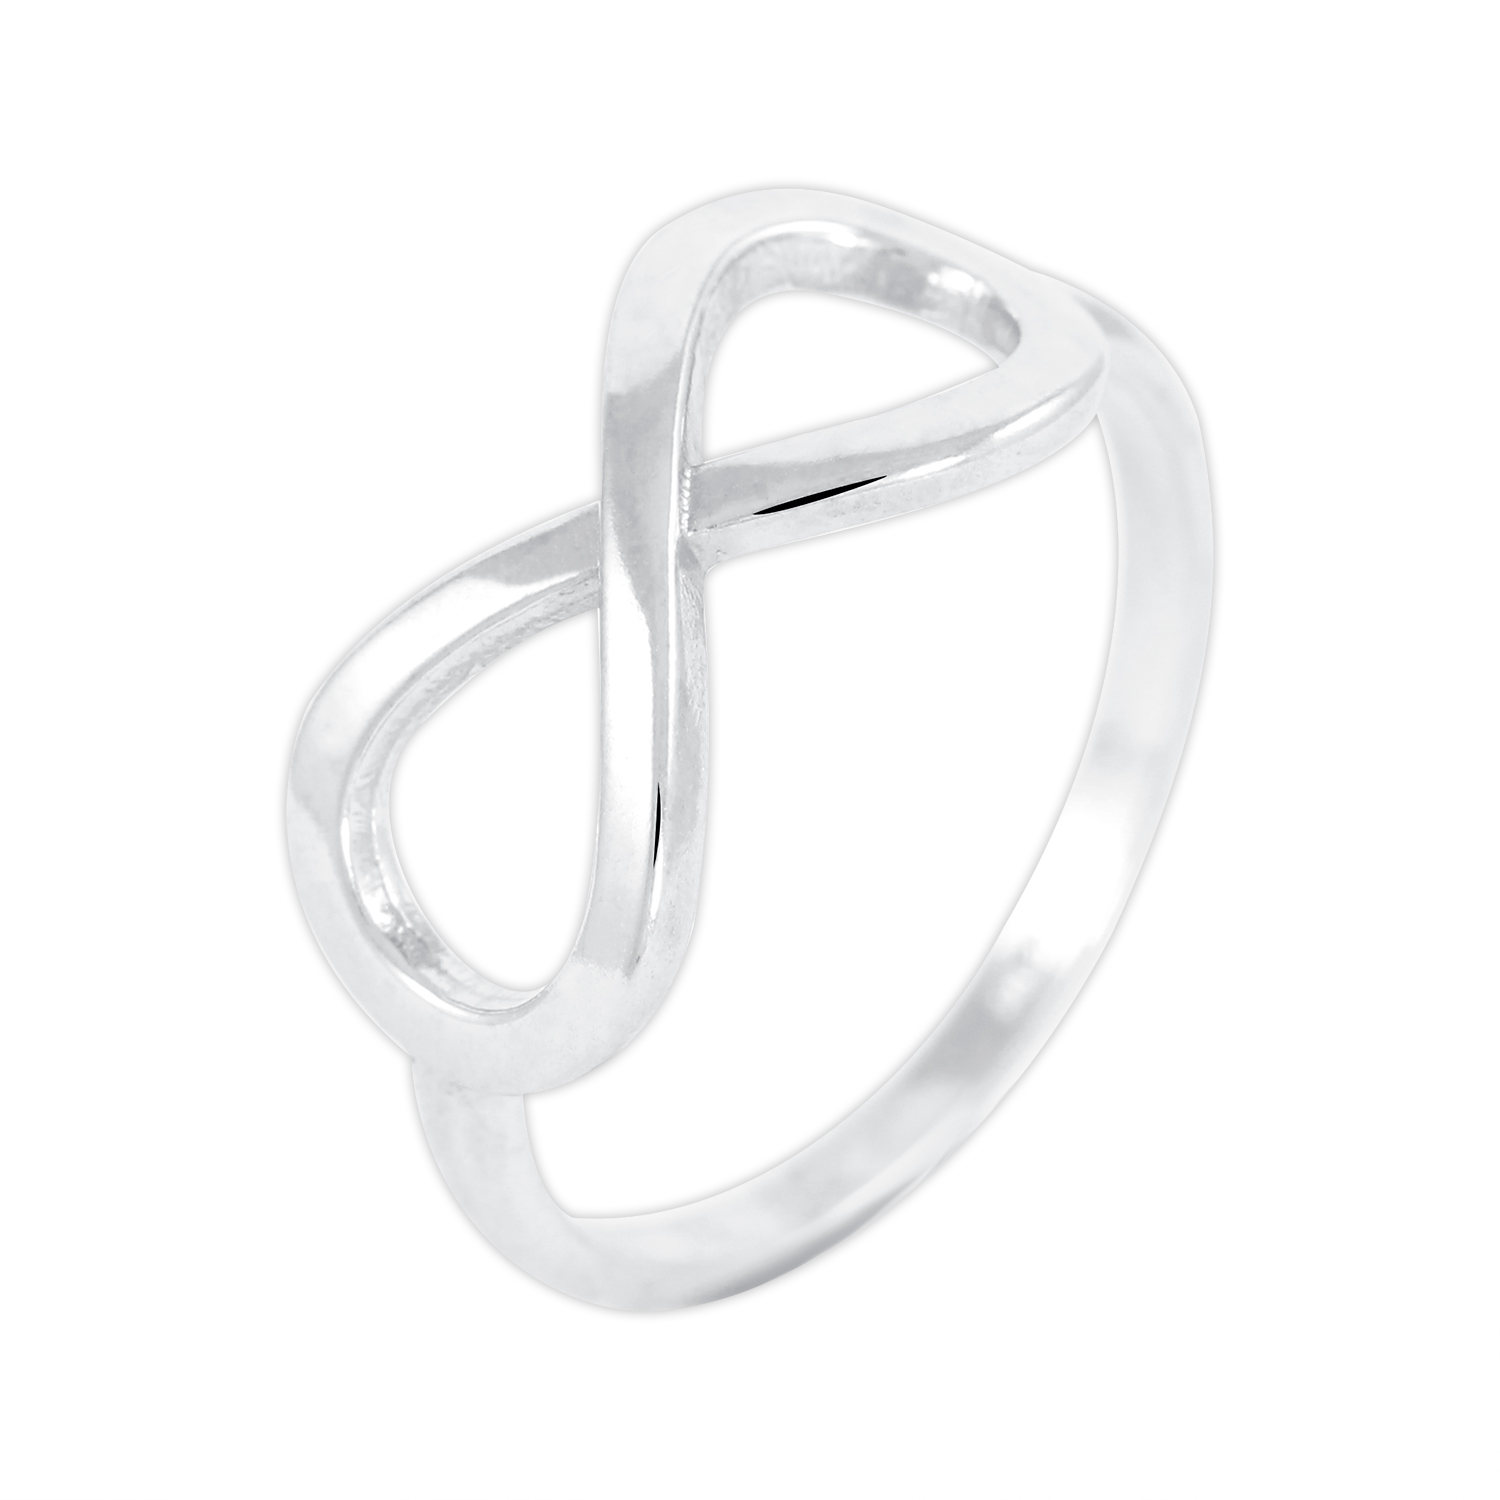 Brilio Silver Módní stříbrný prsten Nekonečno 421 001 01662 04 61 mm